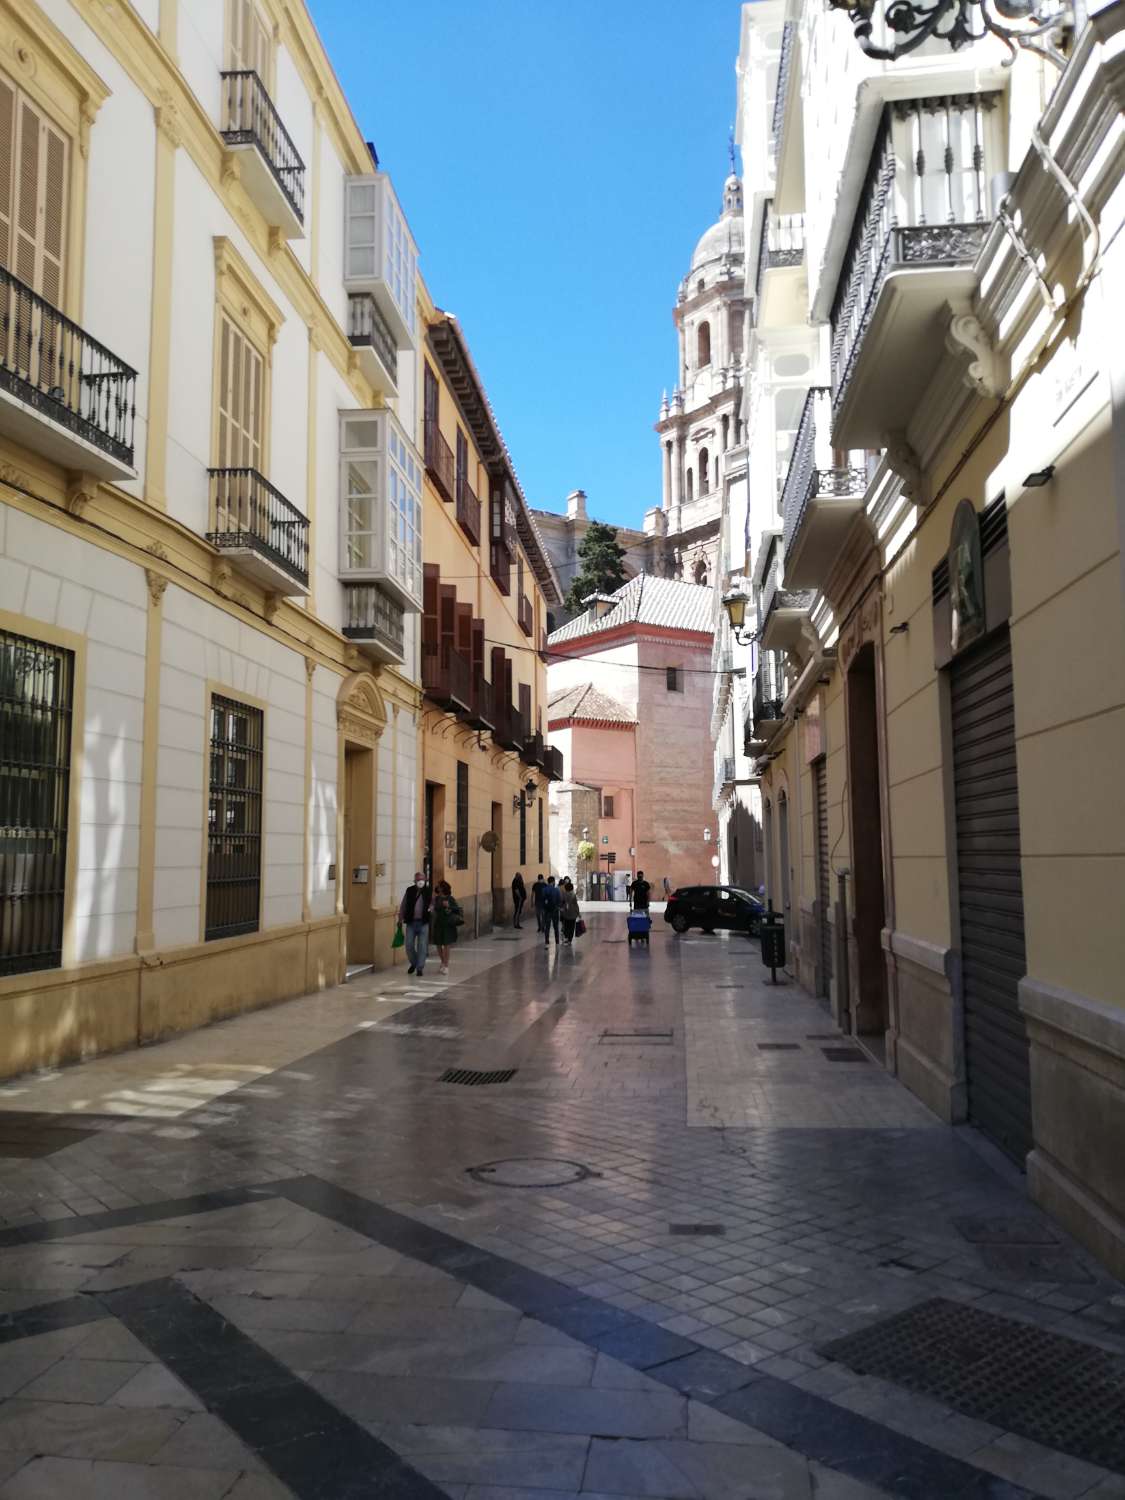 Átic en venda in Centro histórico (Málaga)